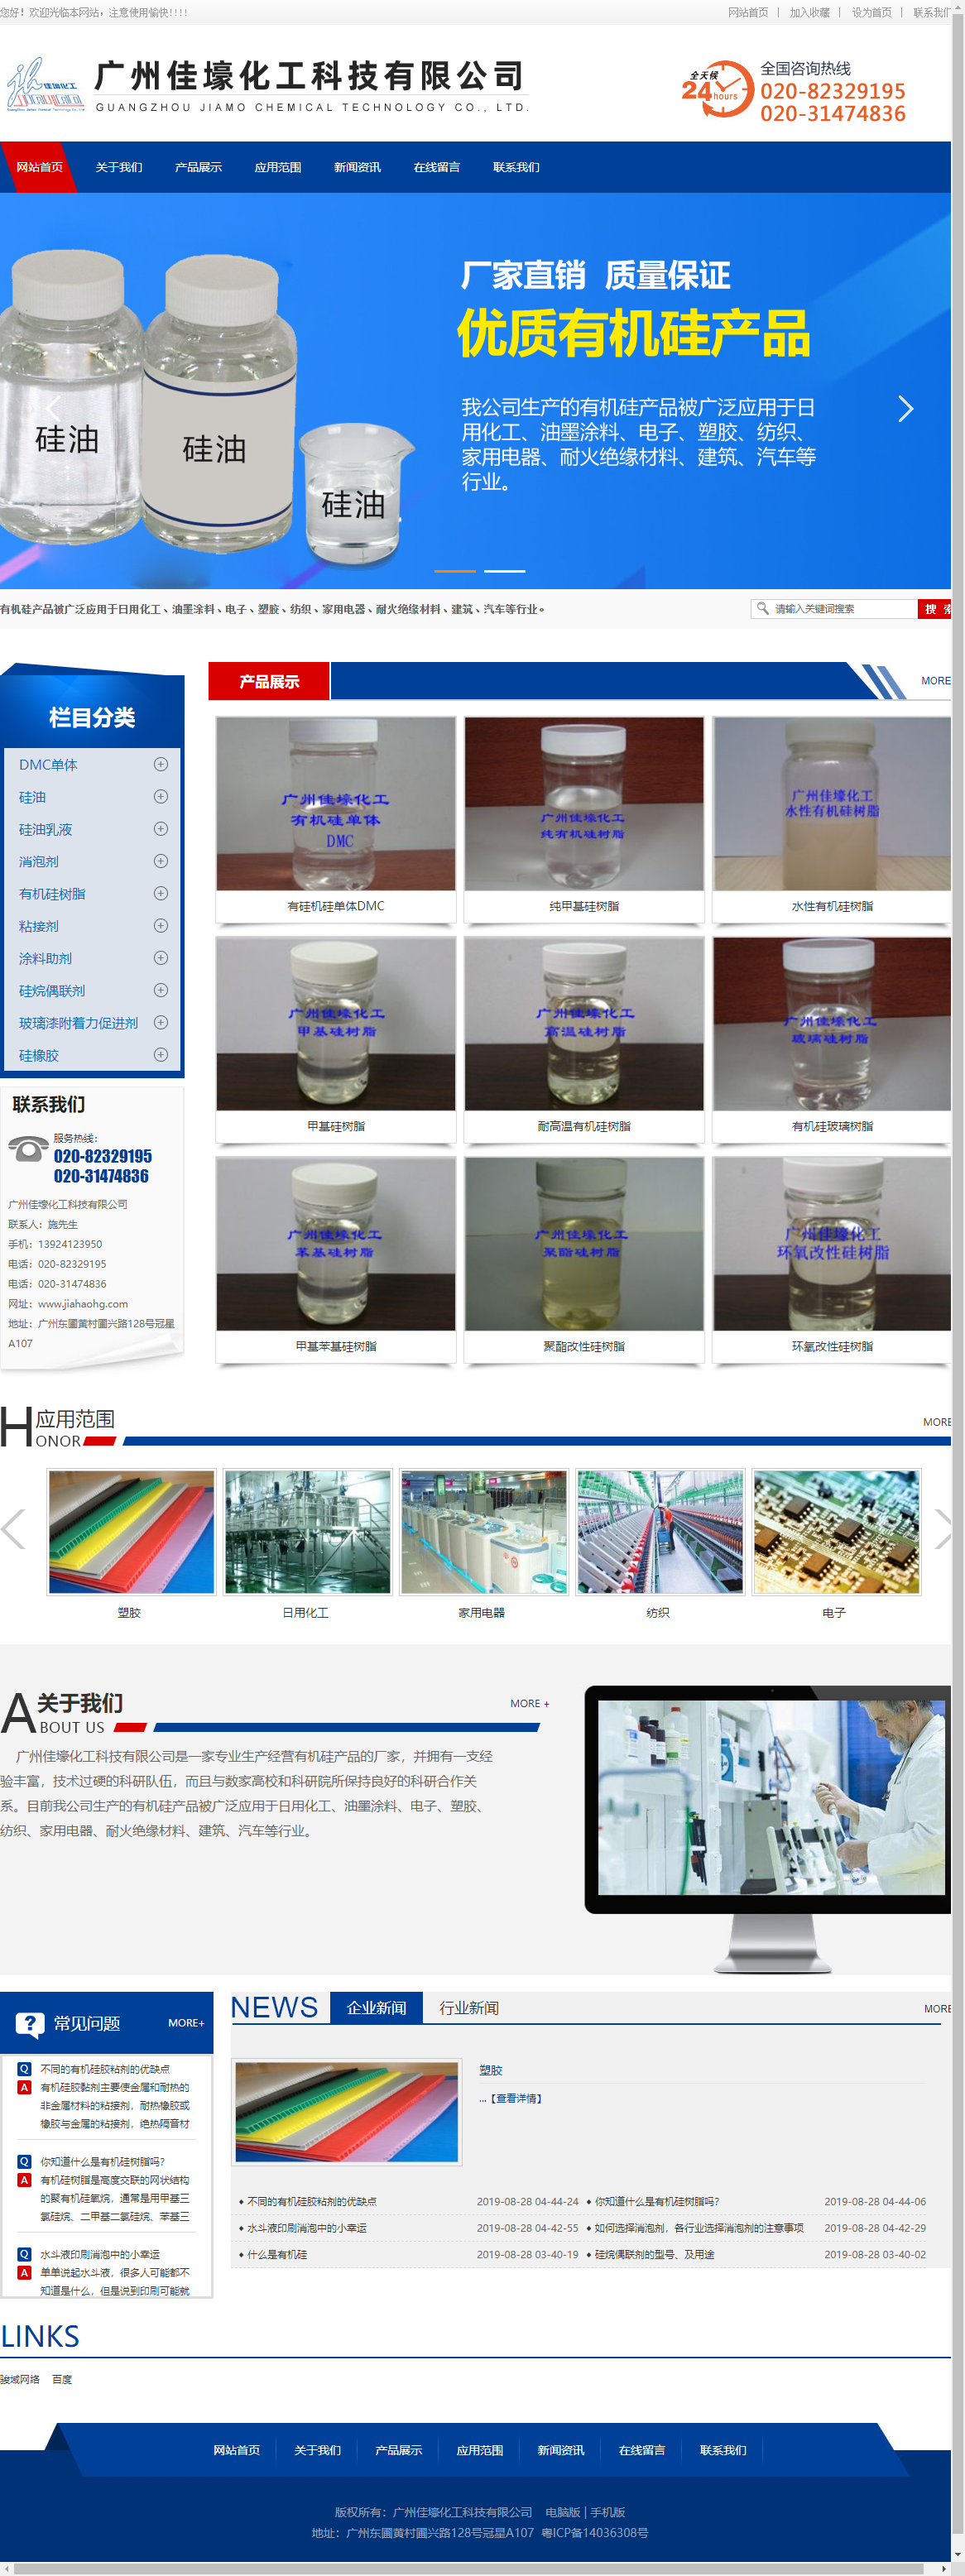 广州佳壕化工科技有限公司网站案例